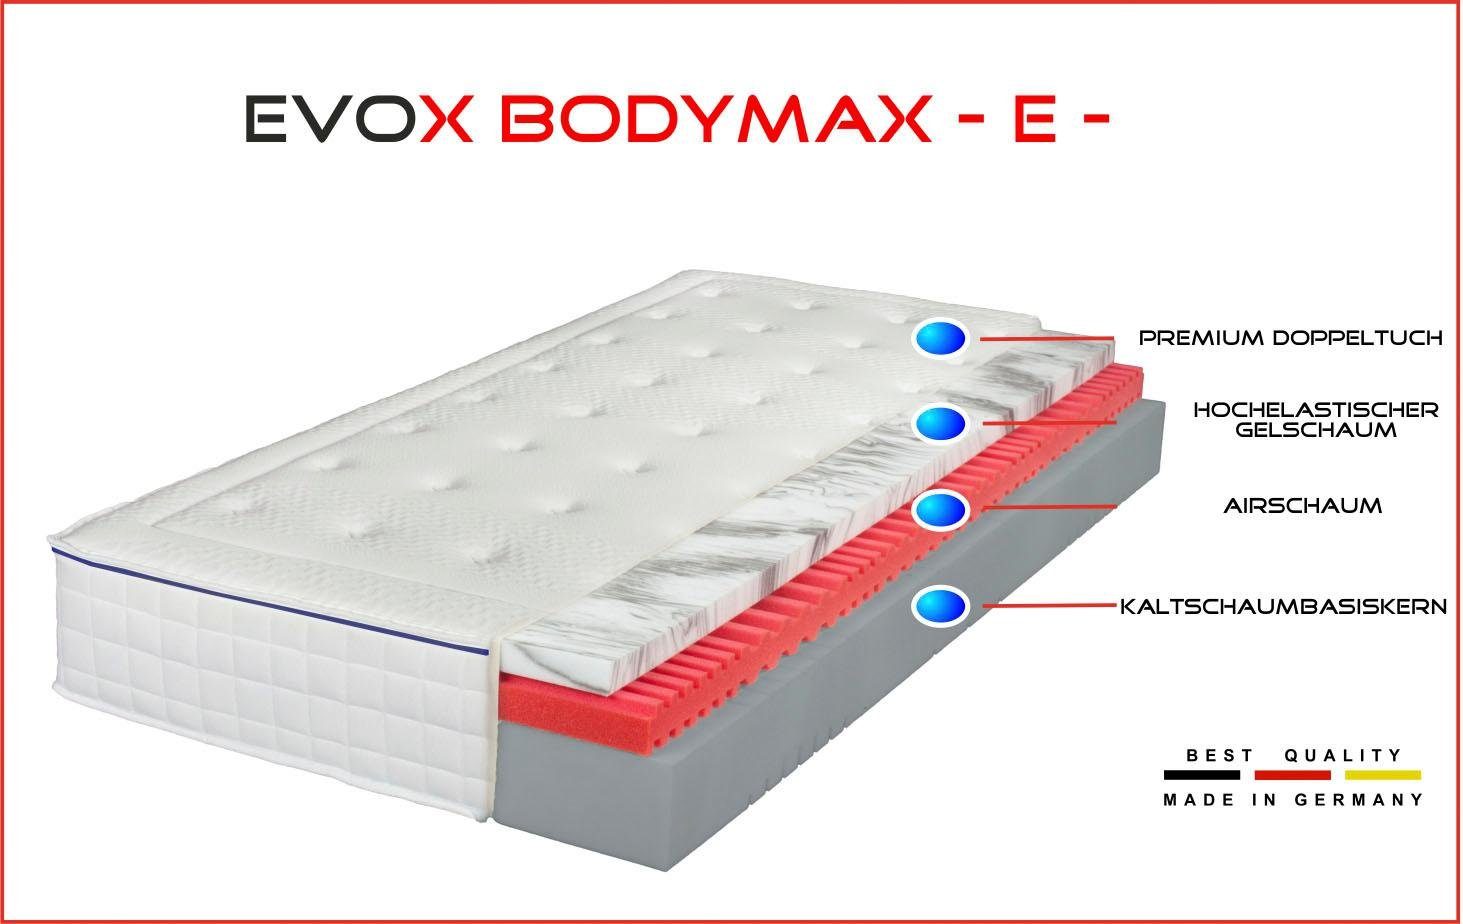 cm Körpertypen Hüfte Breckle breiter EVOX mit und Bodymax Empfohlen hoch, ähnlich für E, Gelschaummatratze Northeim, 24 Schulter